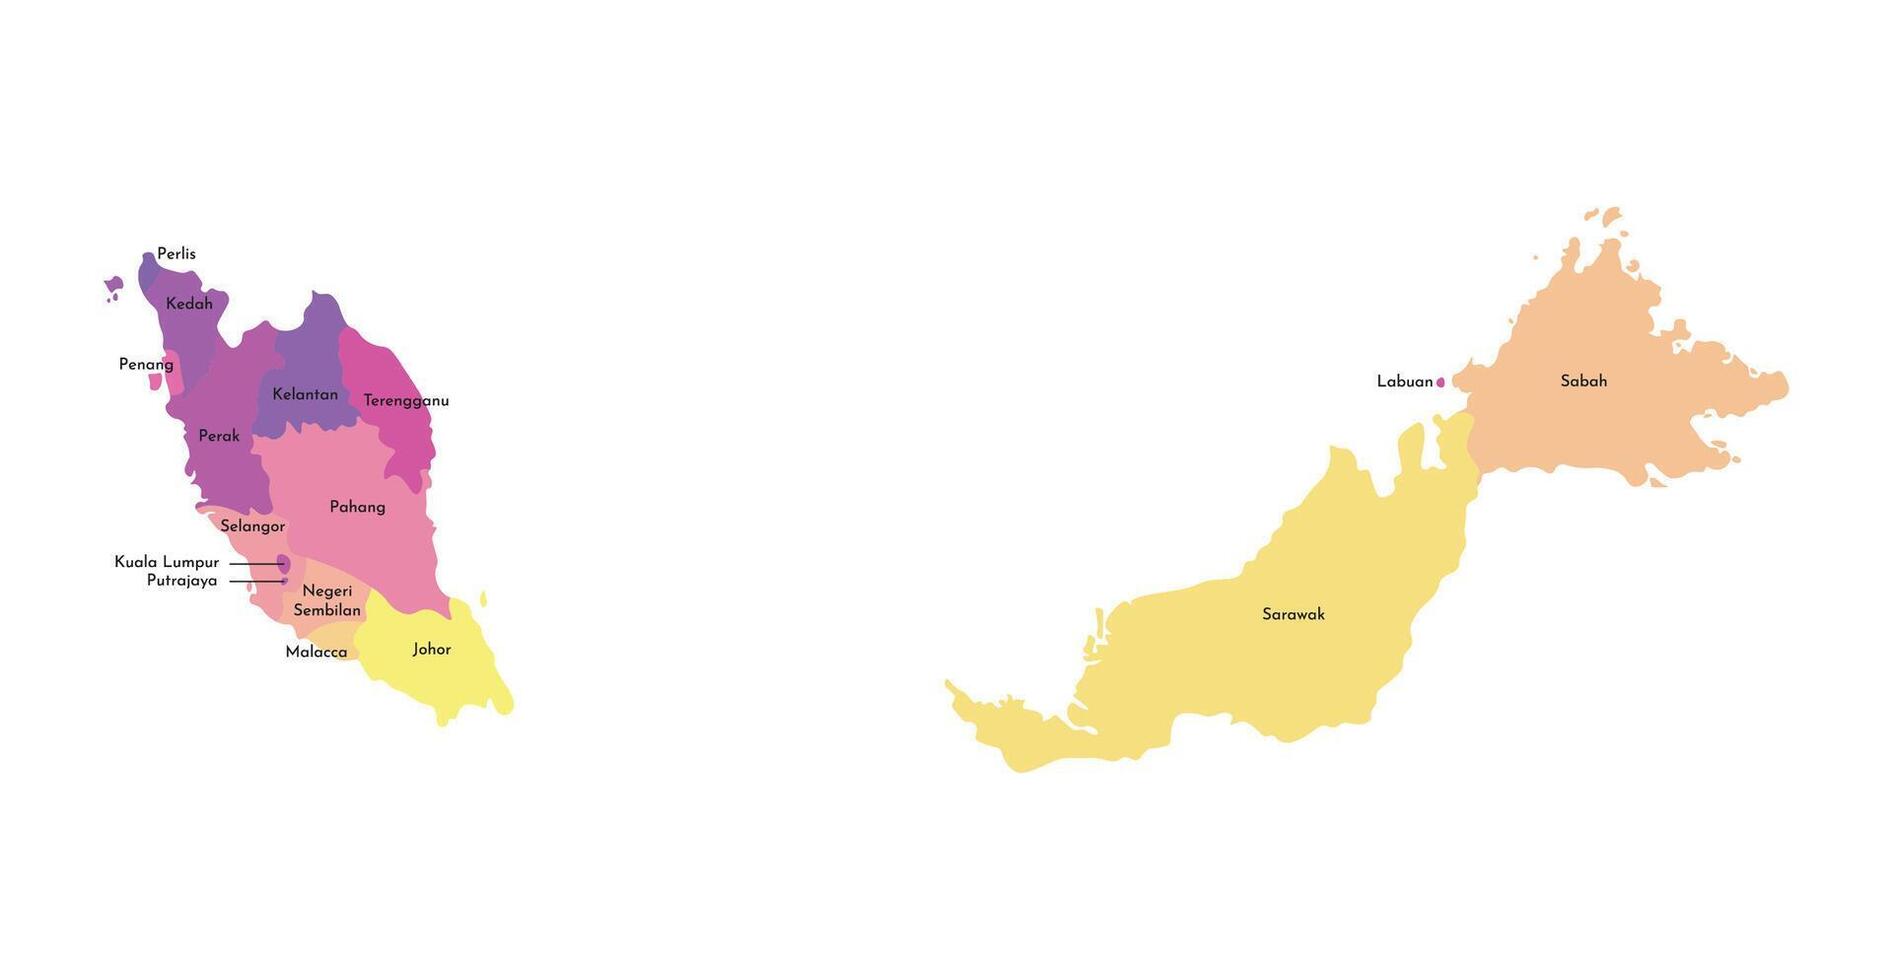 vetor isolado ilustração do simplificado administrativo mapa do Malásia. fronteiras e nomes do a regiões. multi colori silhuetas.